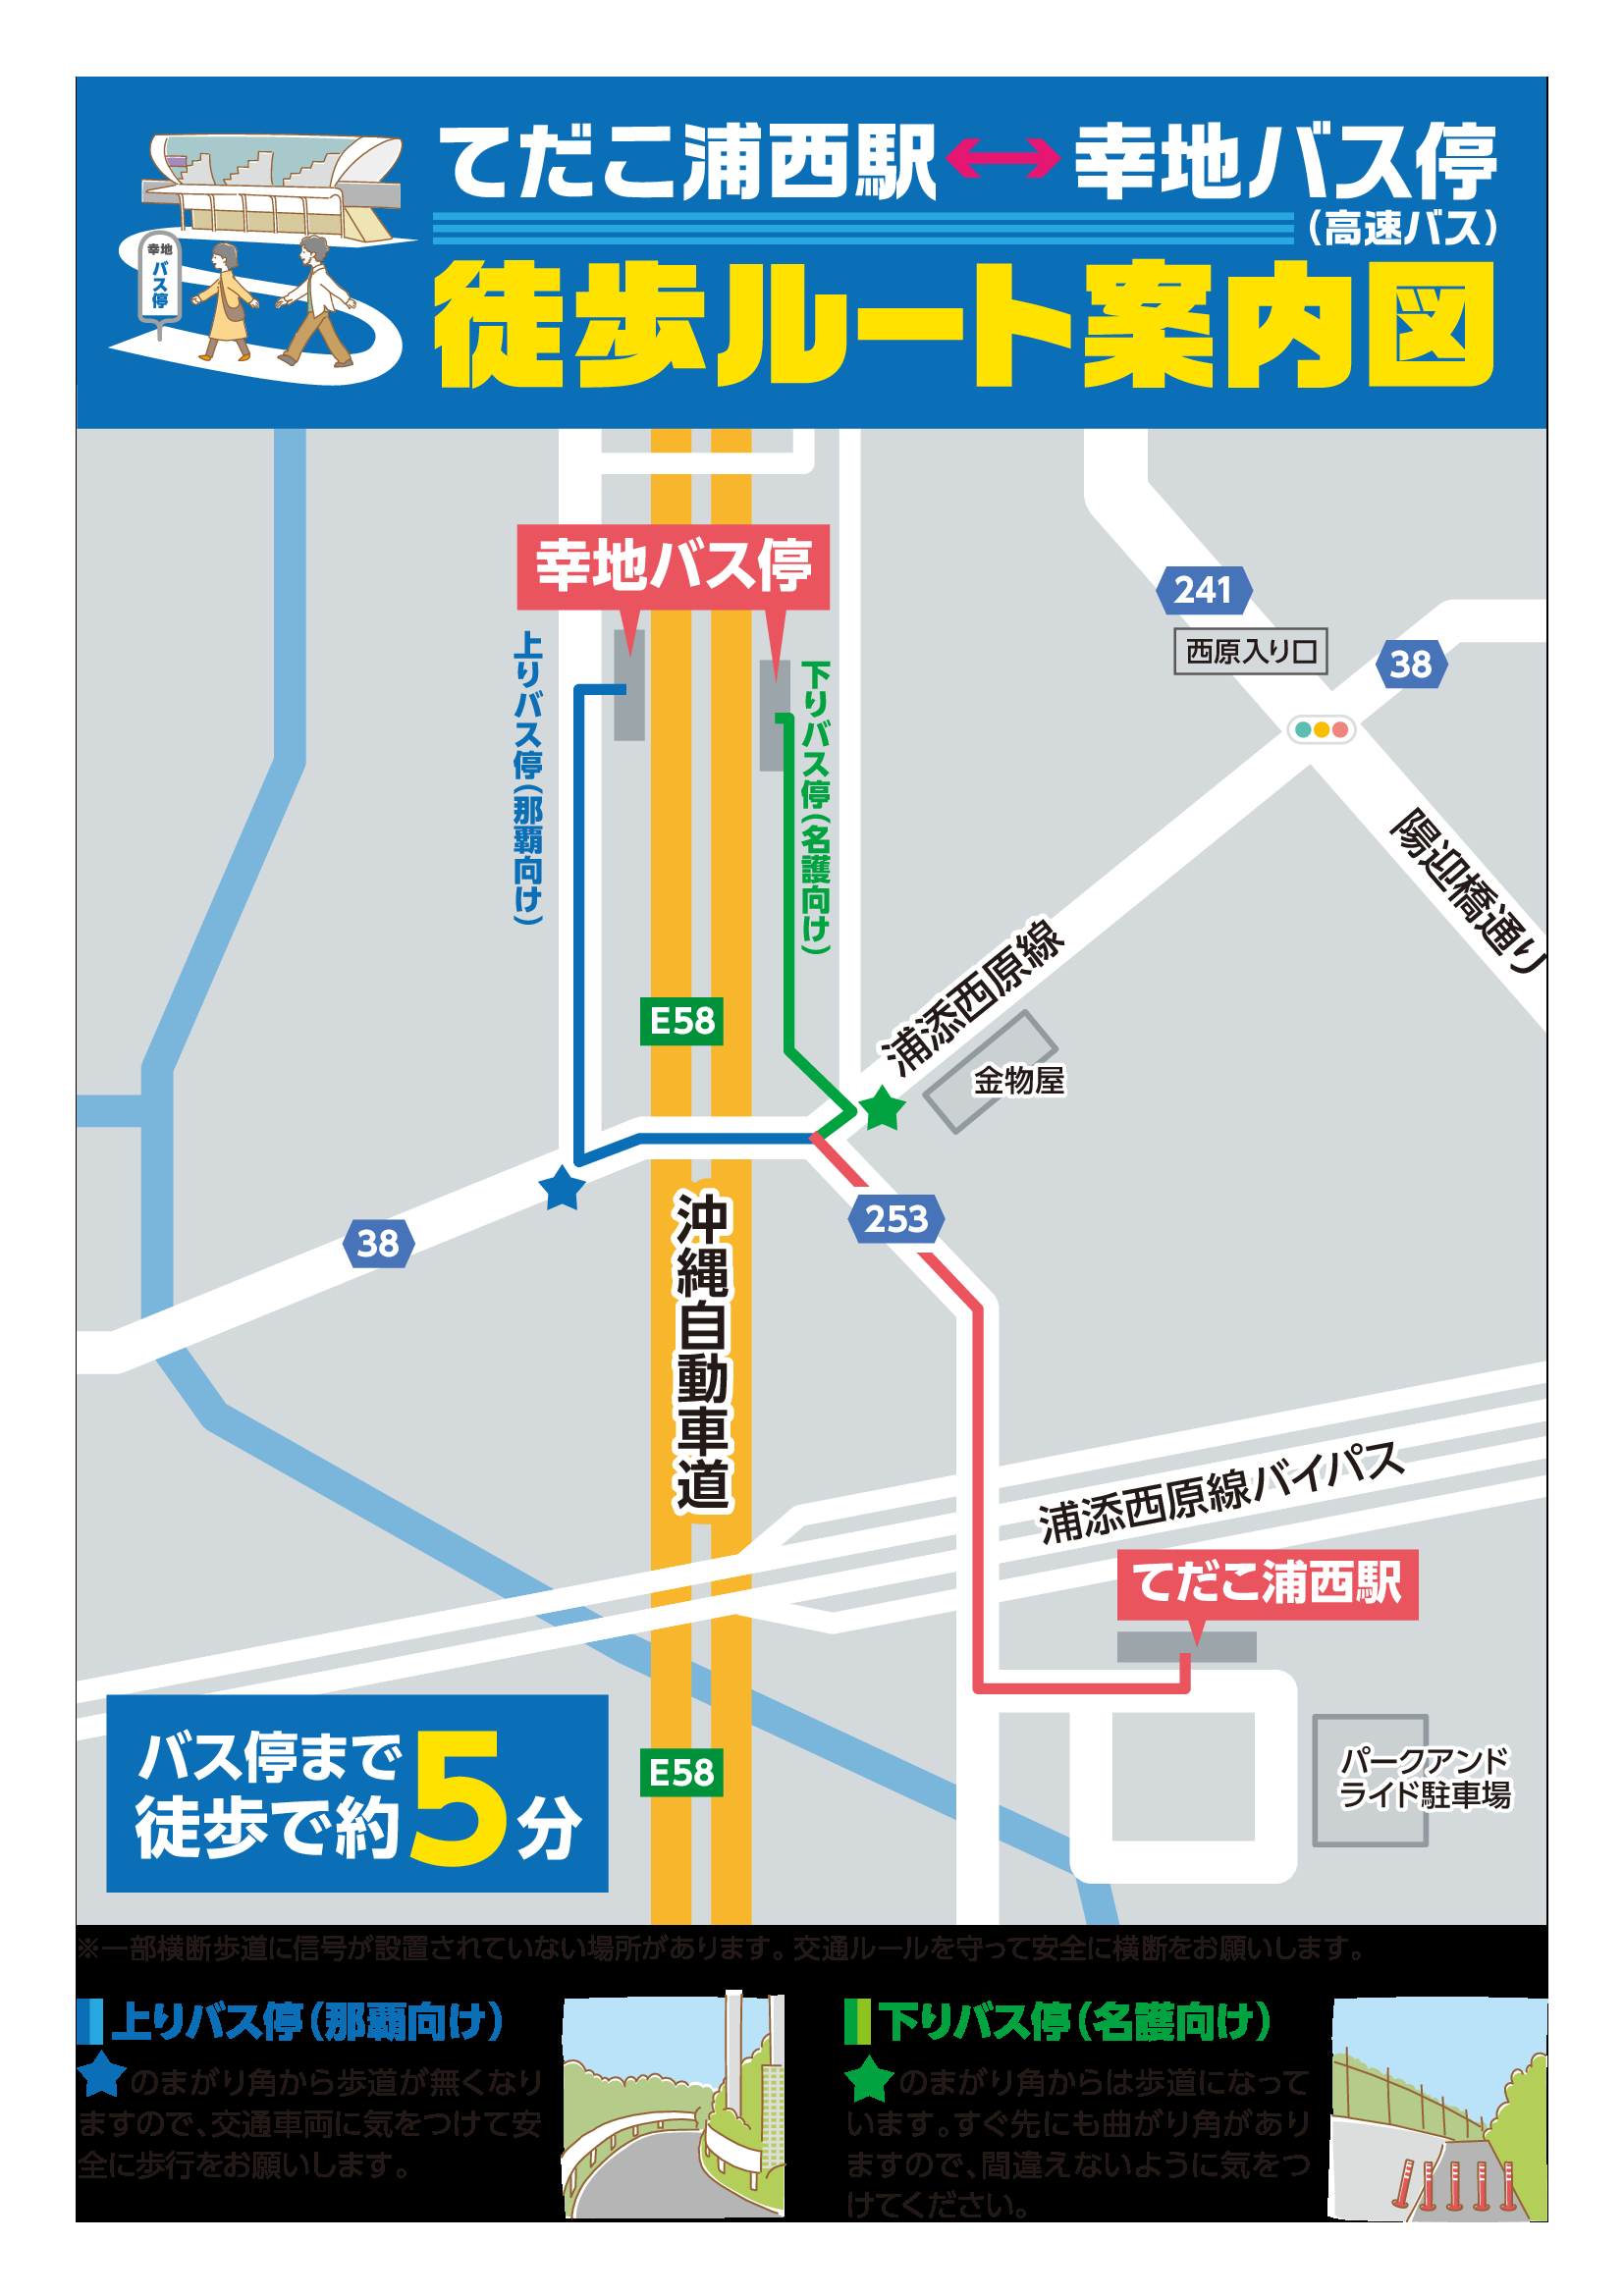 てだこ浦西駅〜高速バス停（幸地バス停）への乗り継ぎルート案内図について